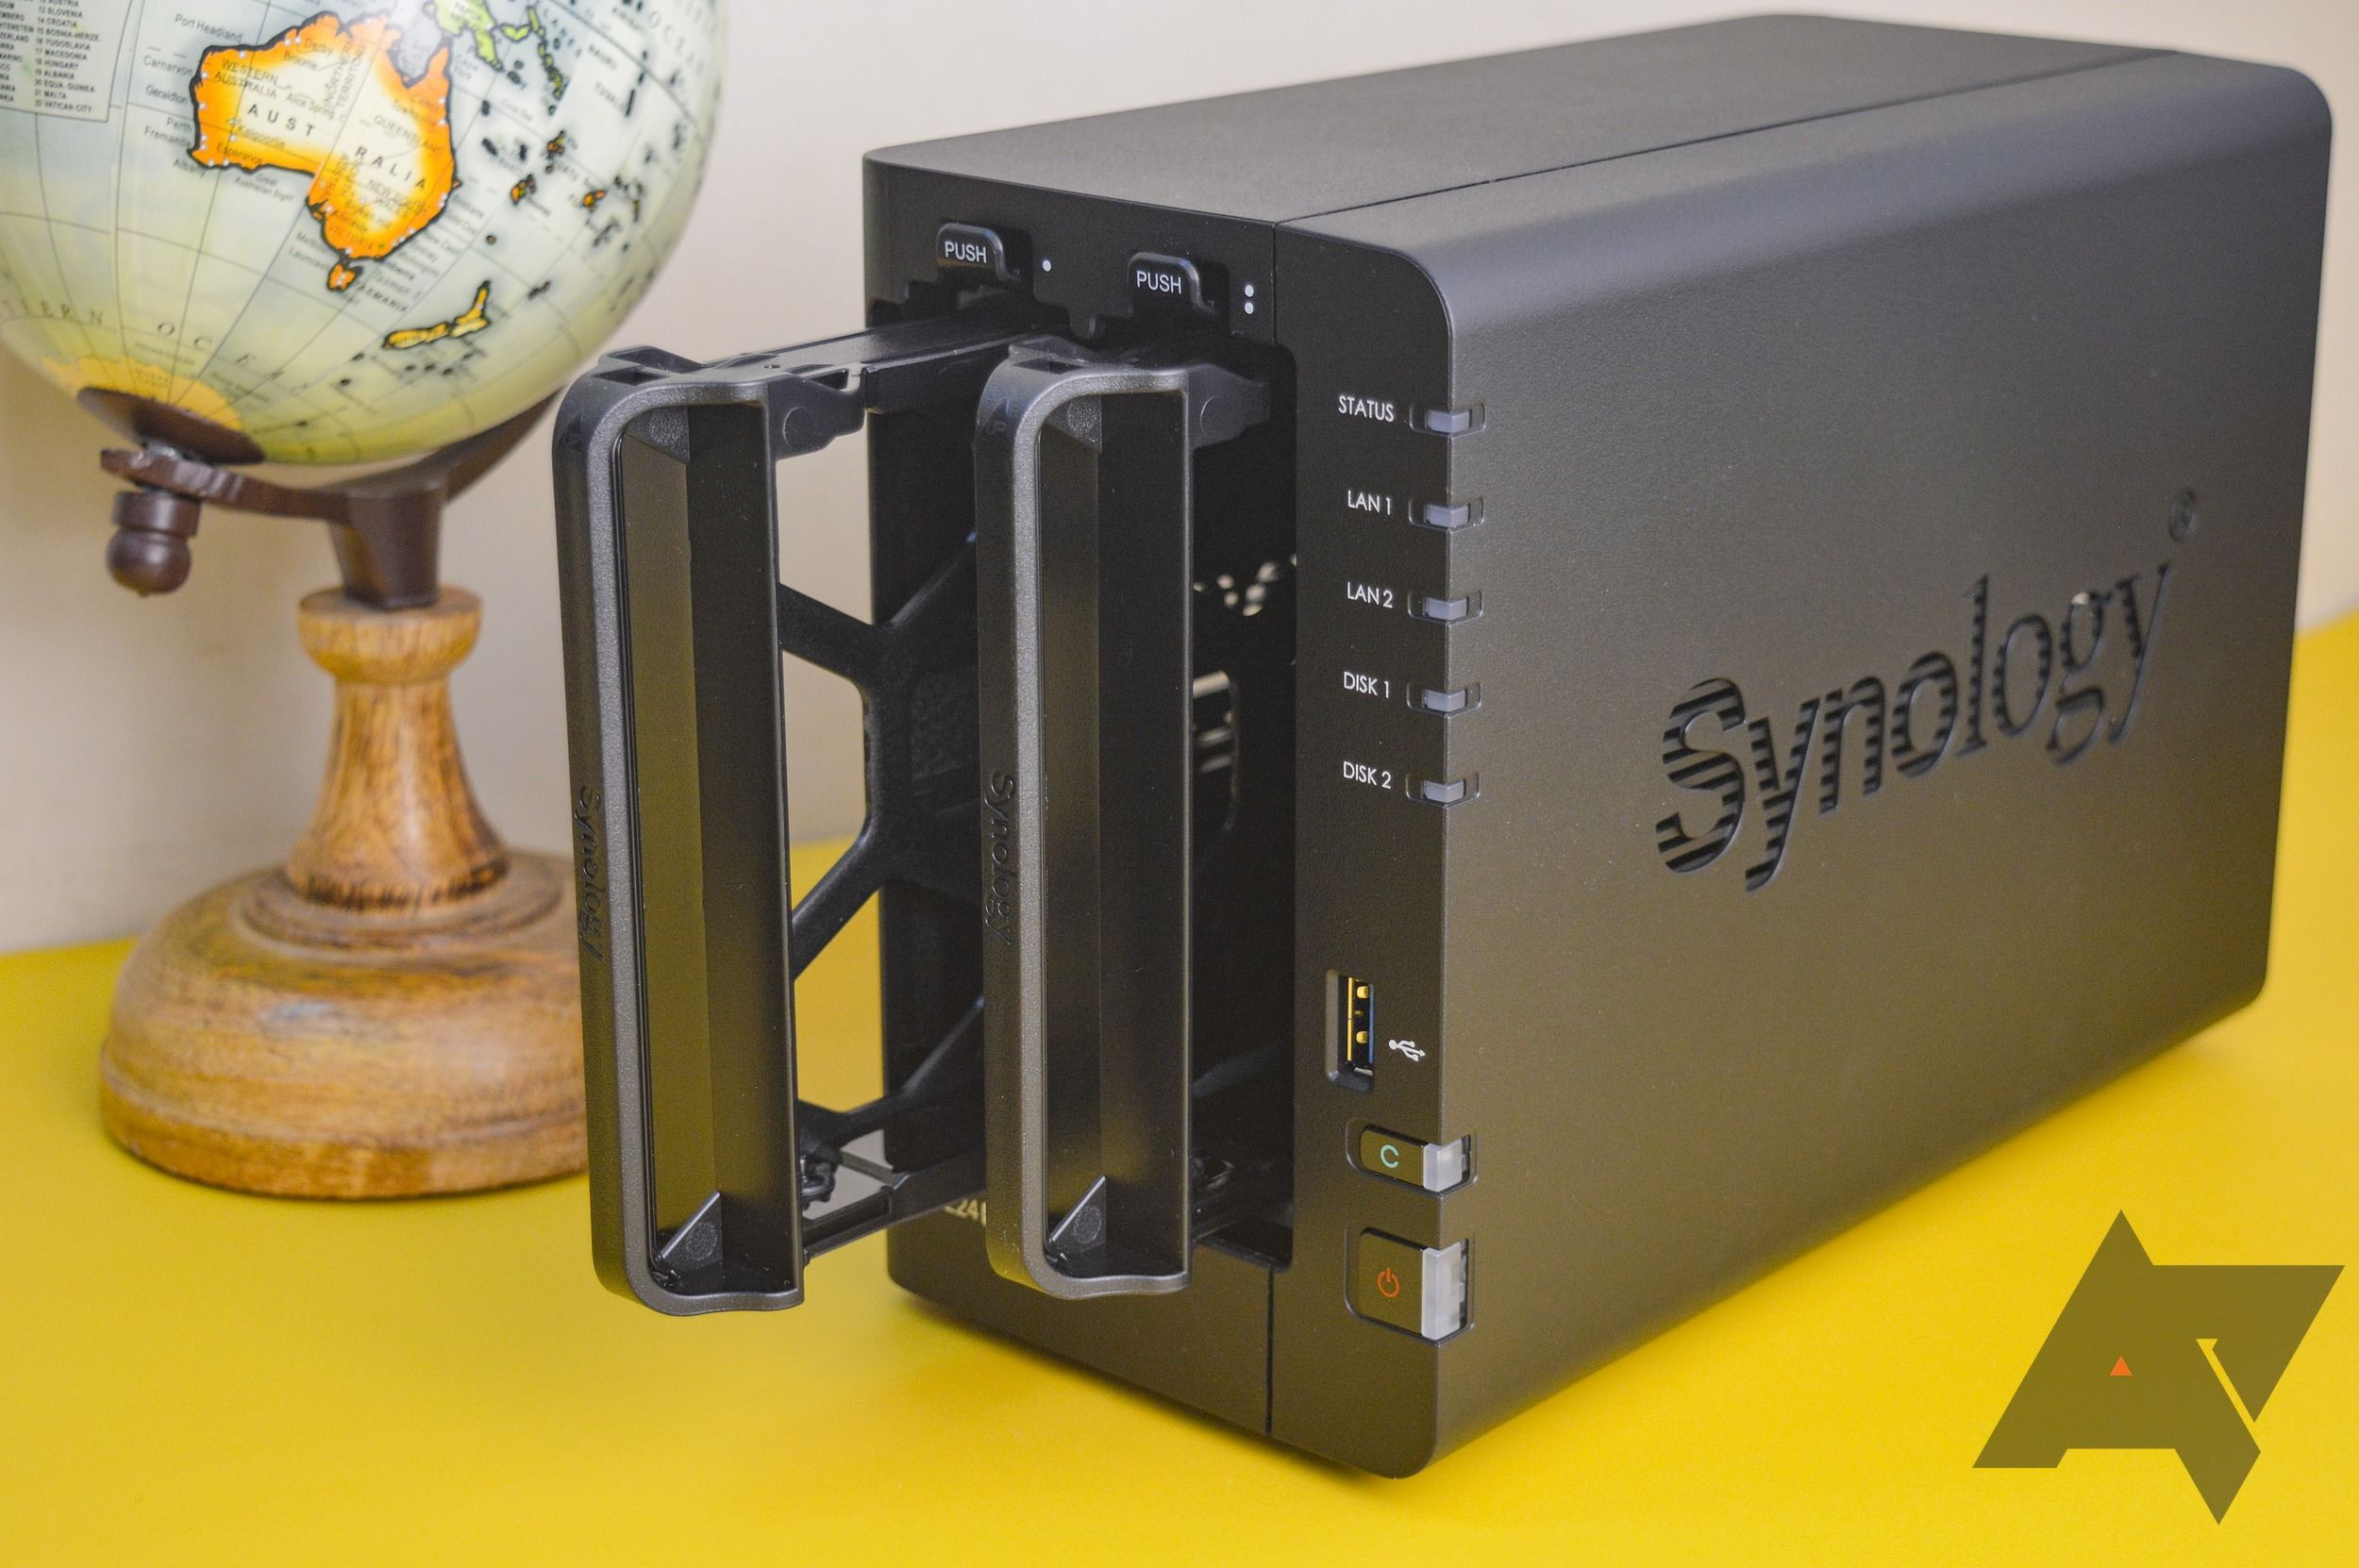 Synology DiskStation DS220+ 2-Bay NAS Enclosure, Black